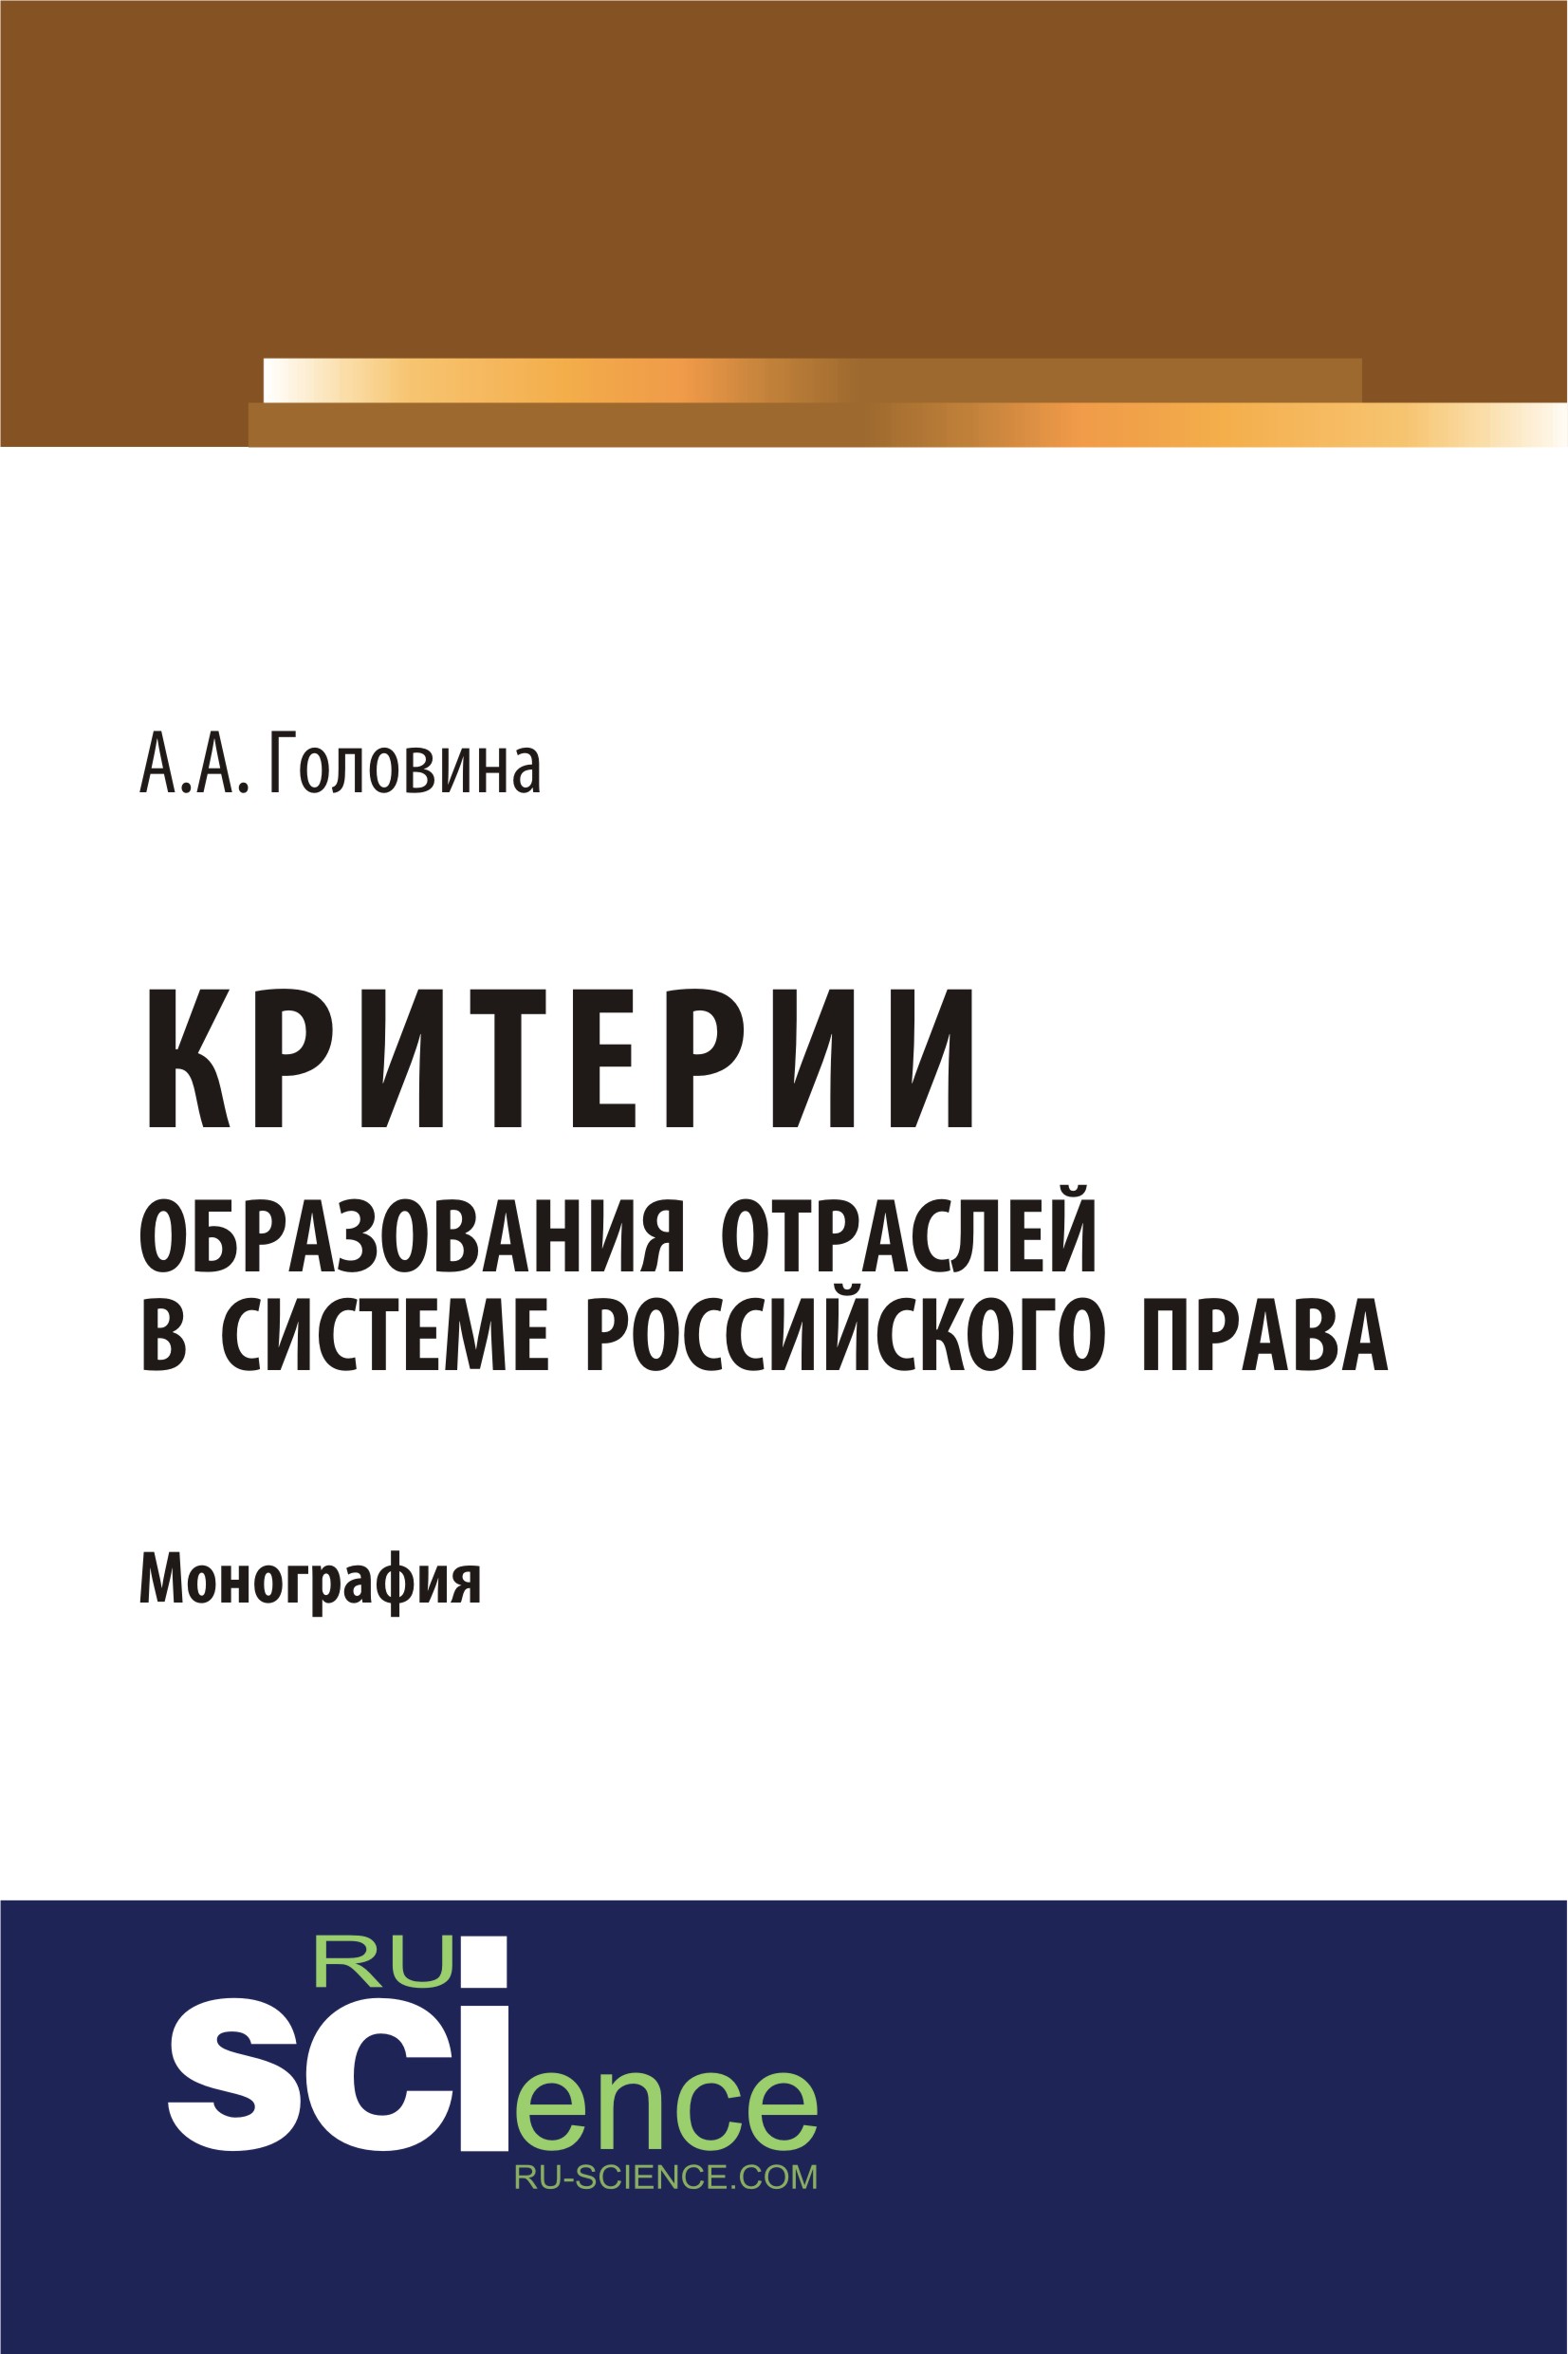 Критерии образования отраслей в системе российского права